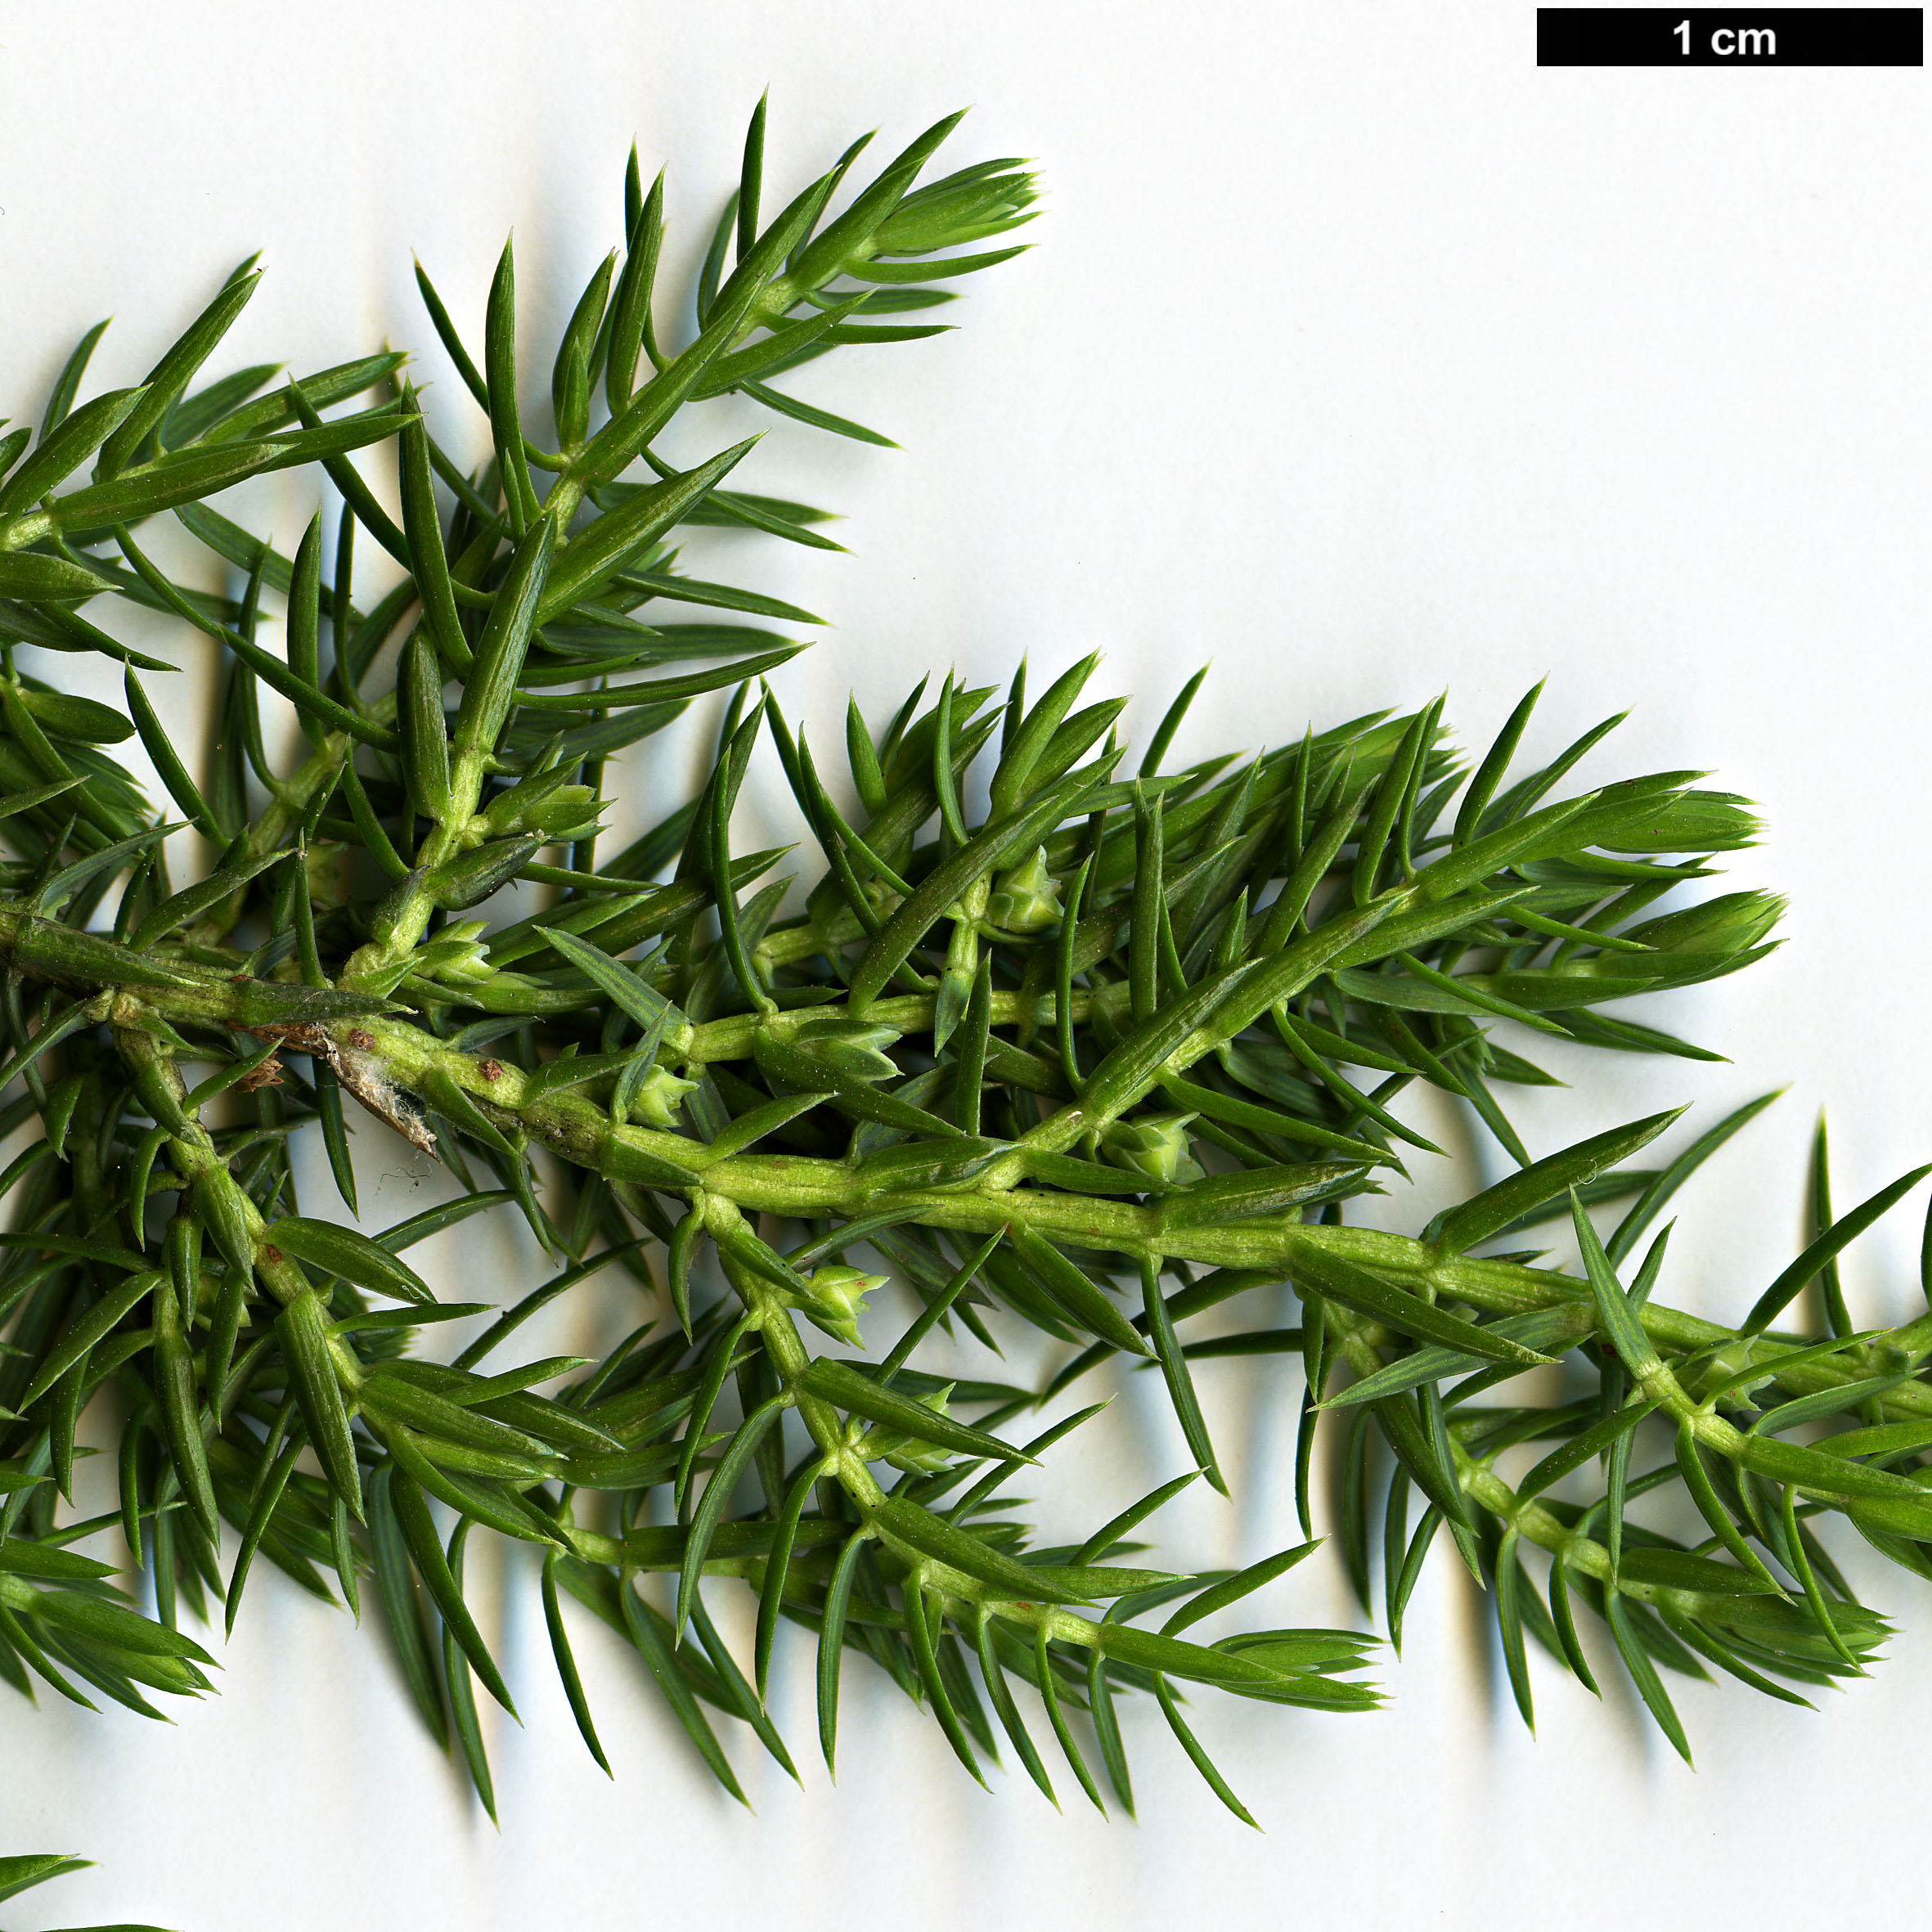 High resolution image: Family: Cupressaceae - Genus: Juniperus - Taxon: squamata - SpeciesSub: var. fargesii